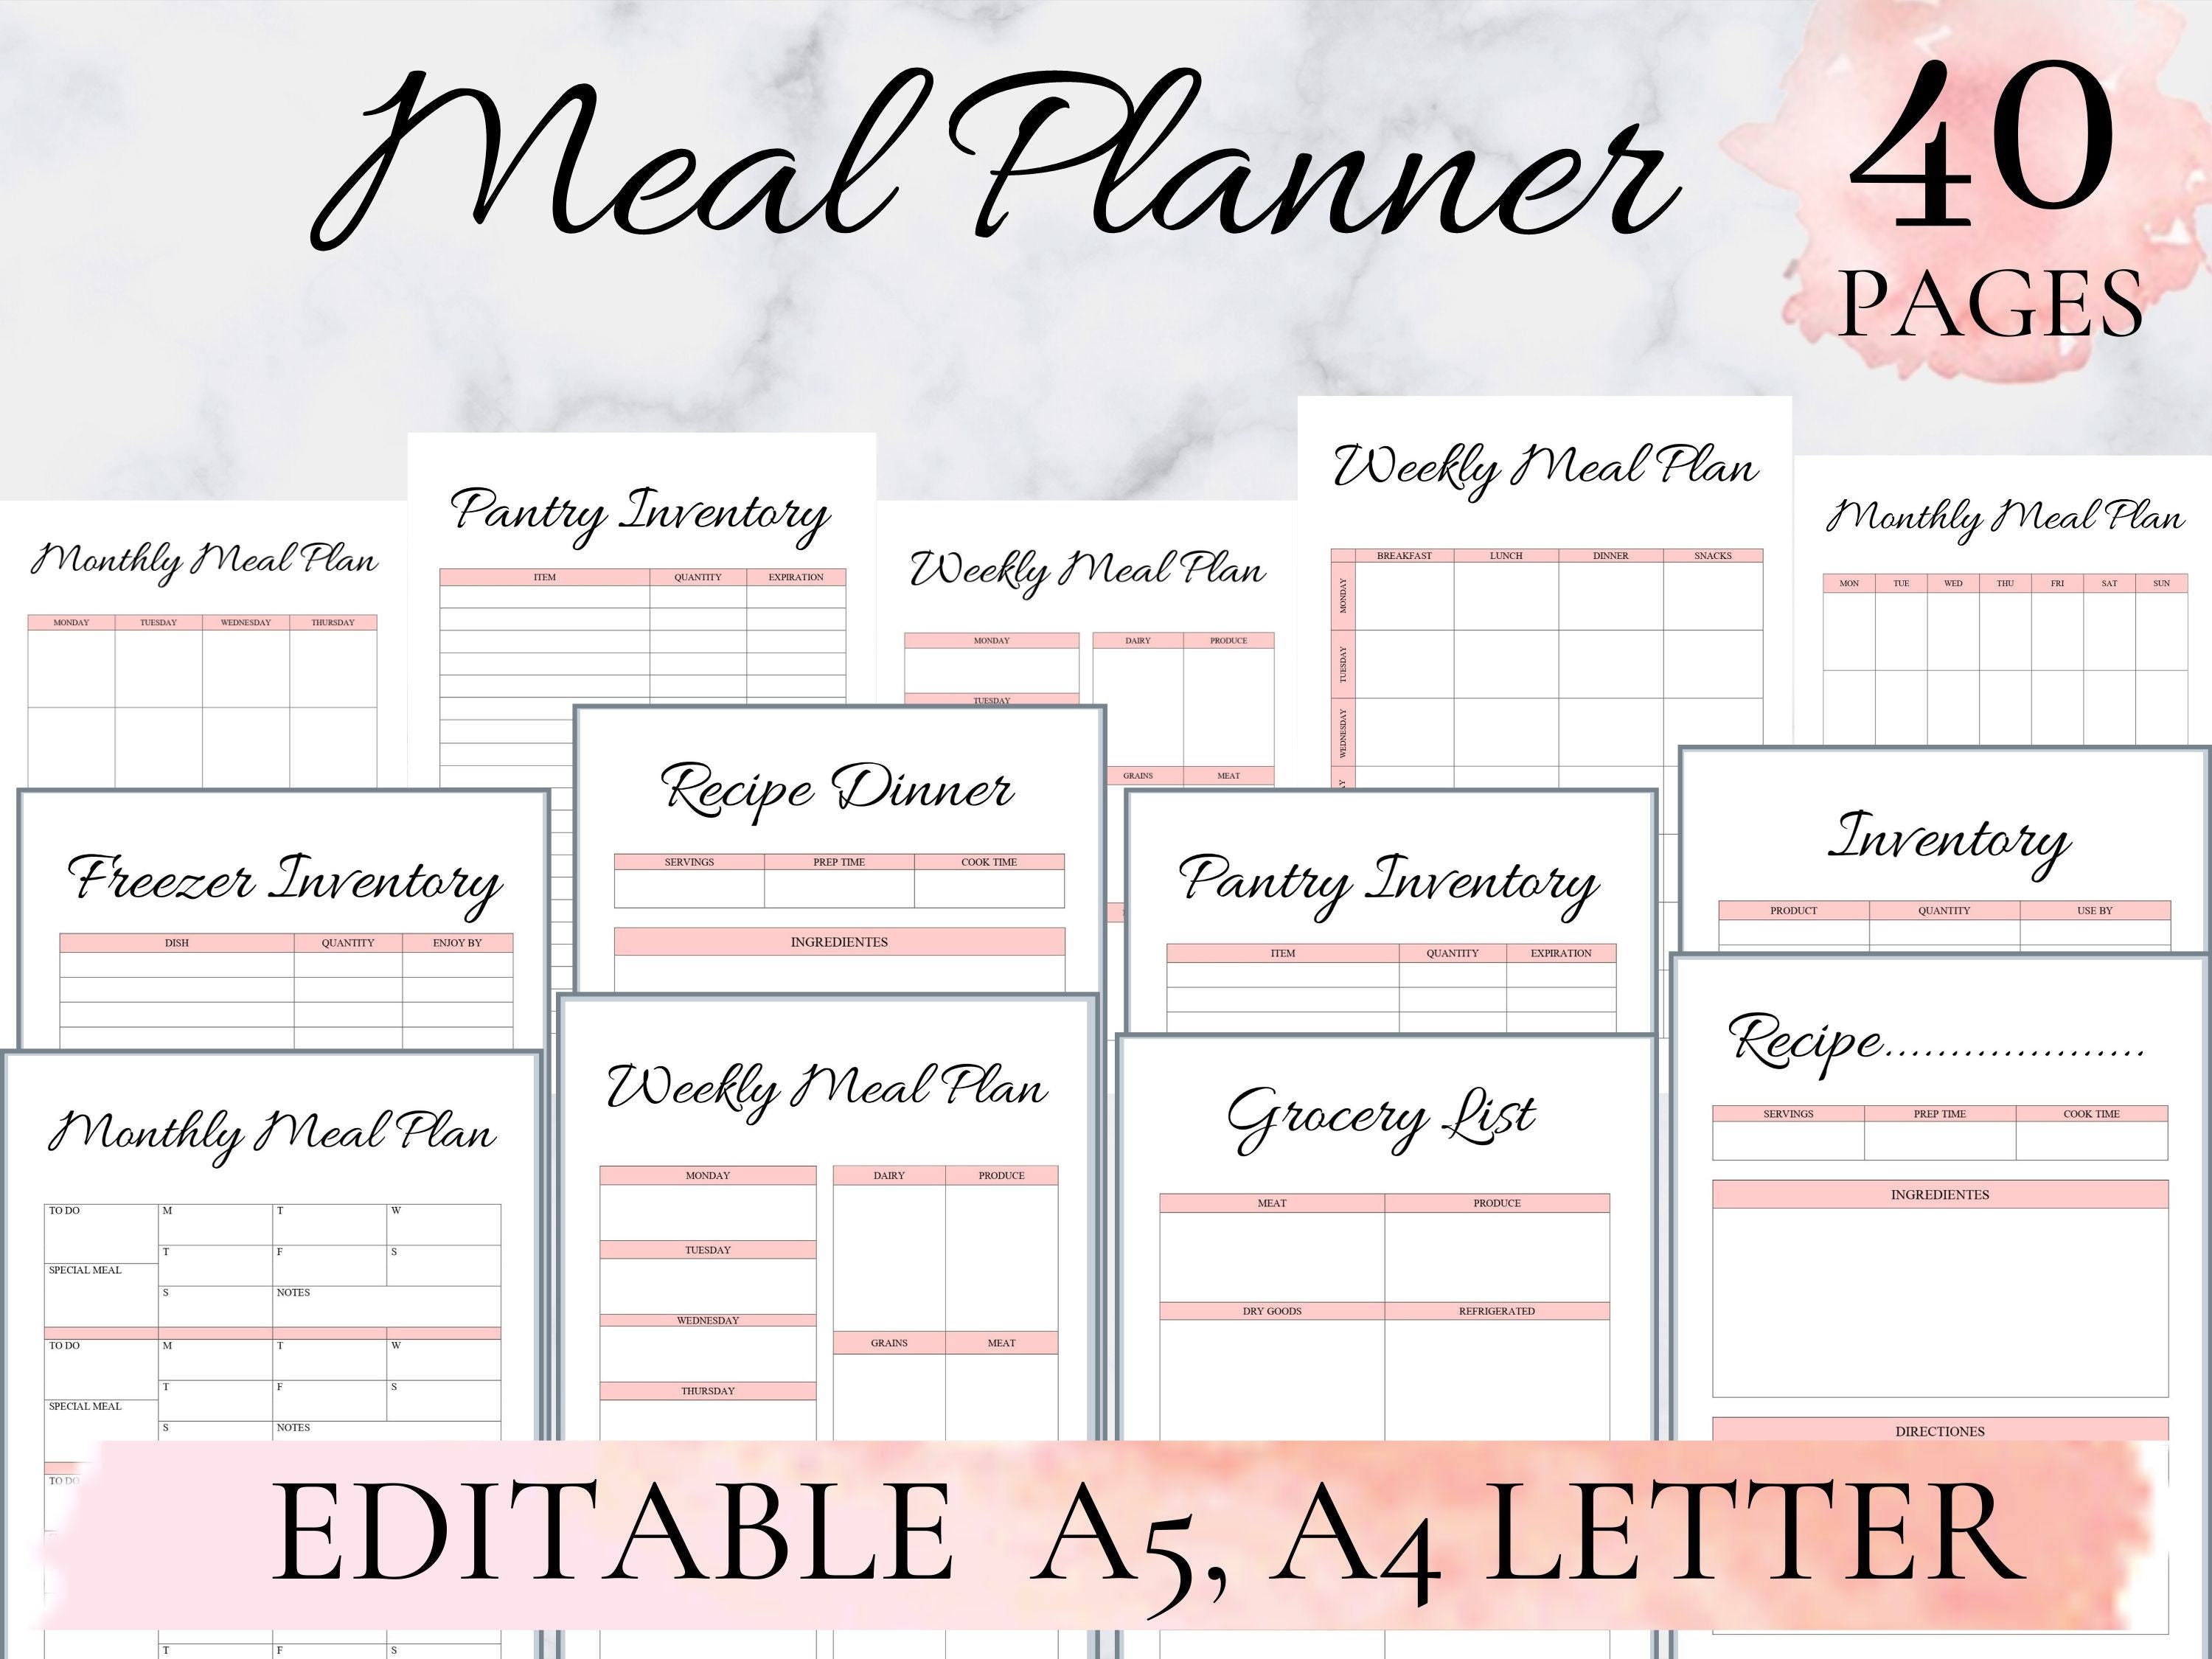 Free Printable Weekly Meal Planner + Calendar